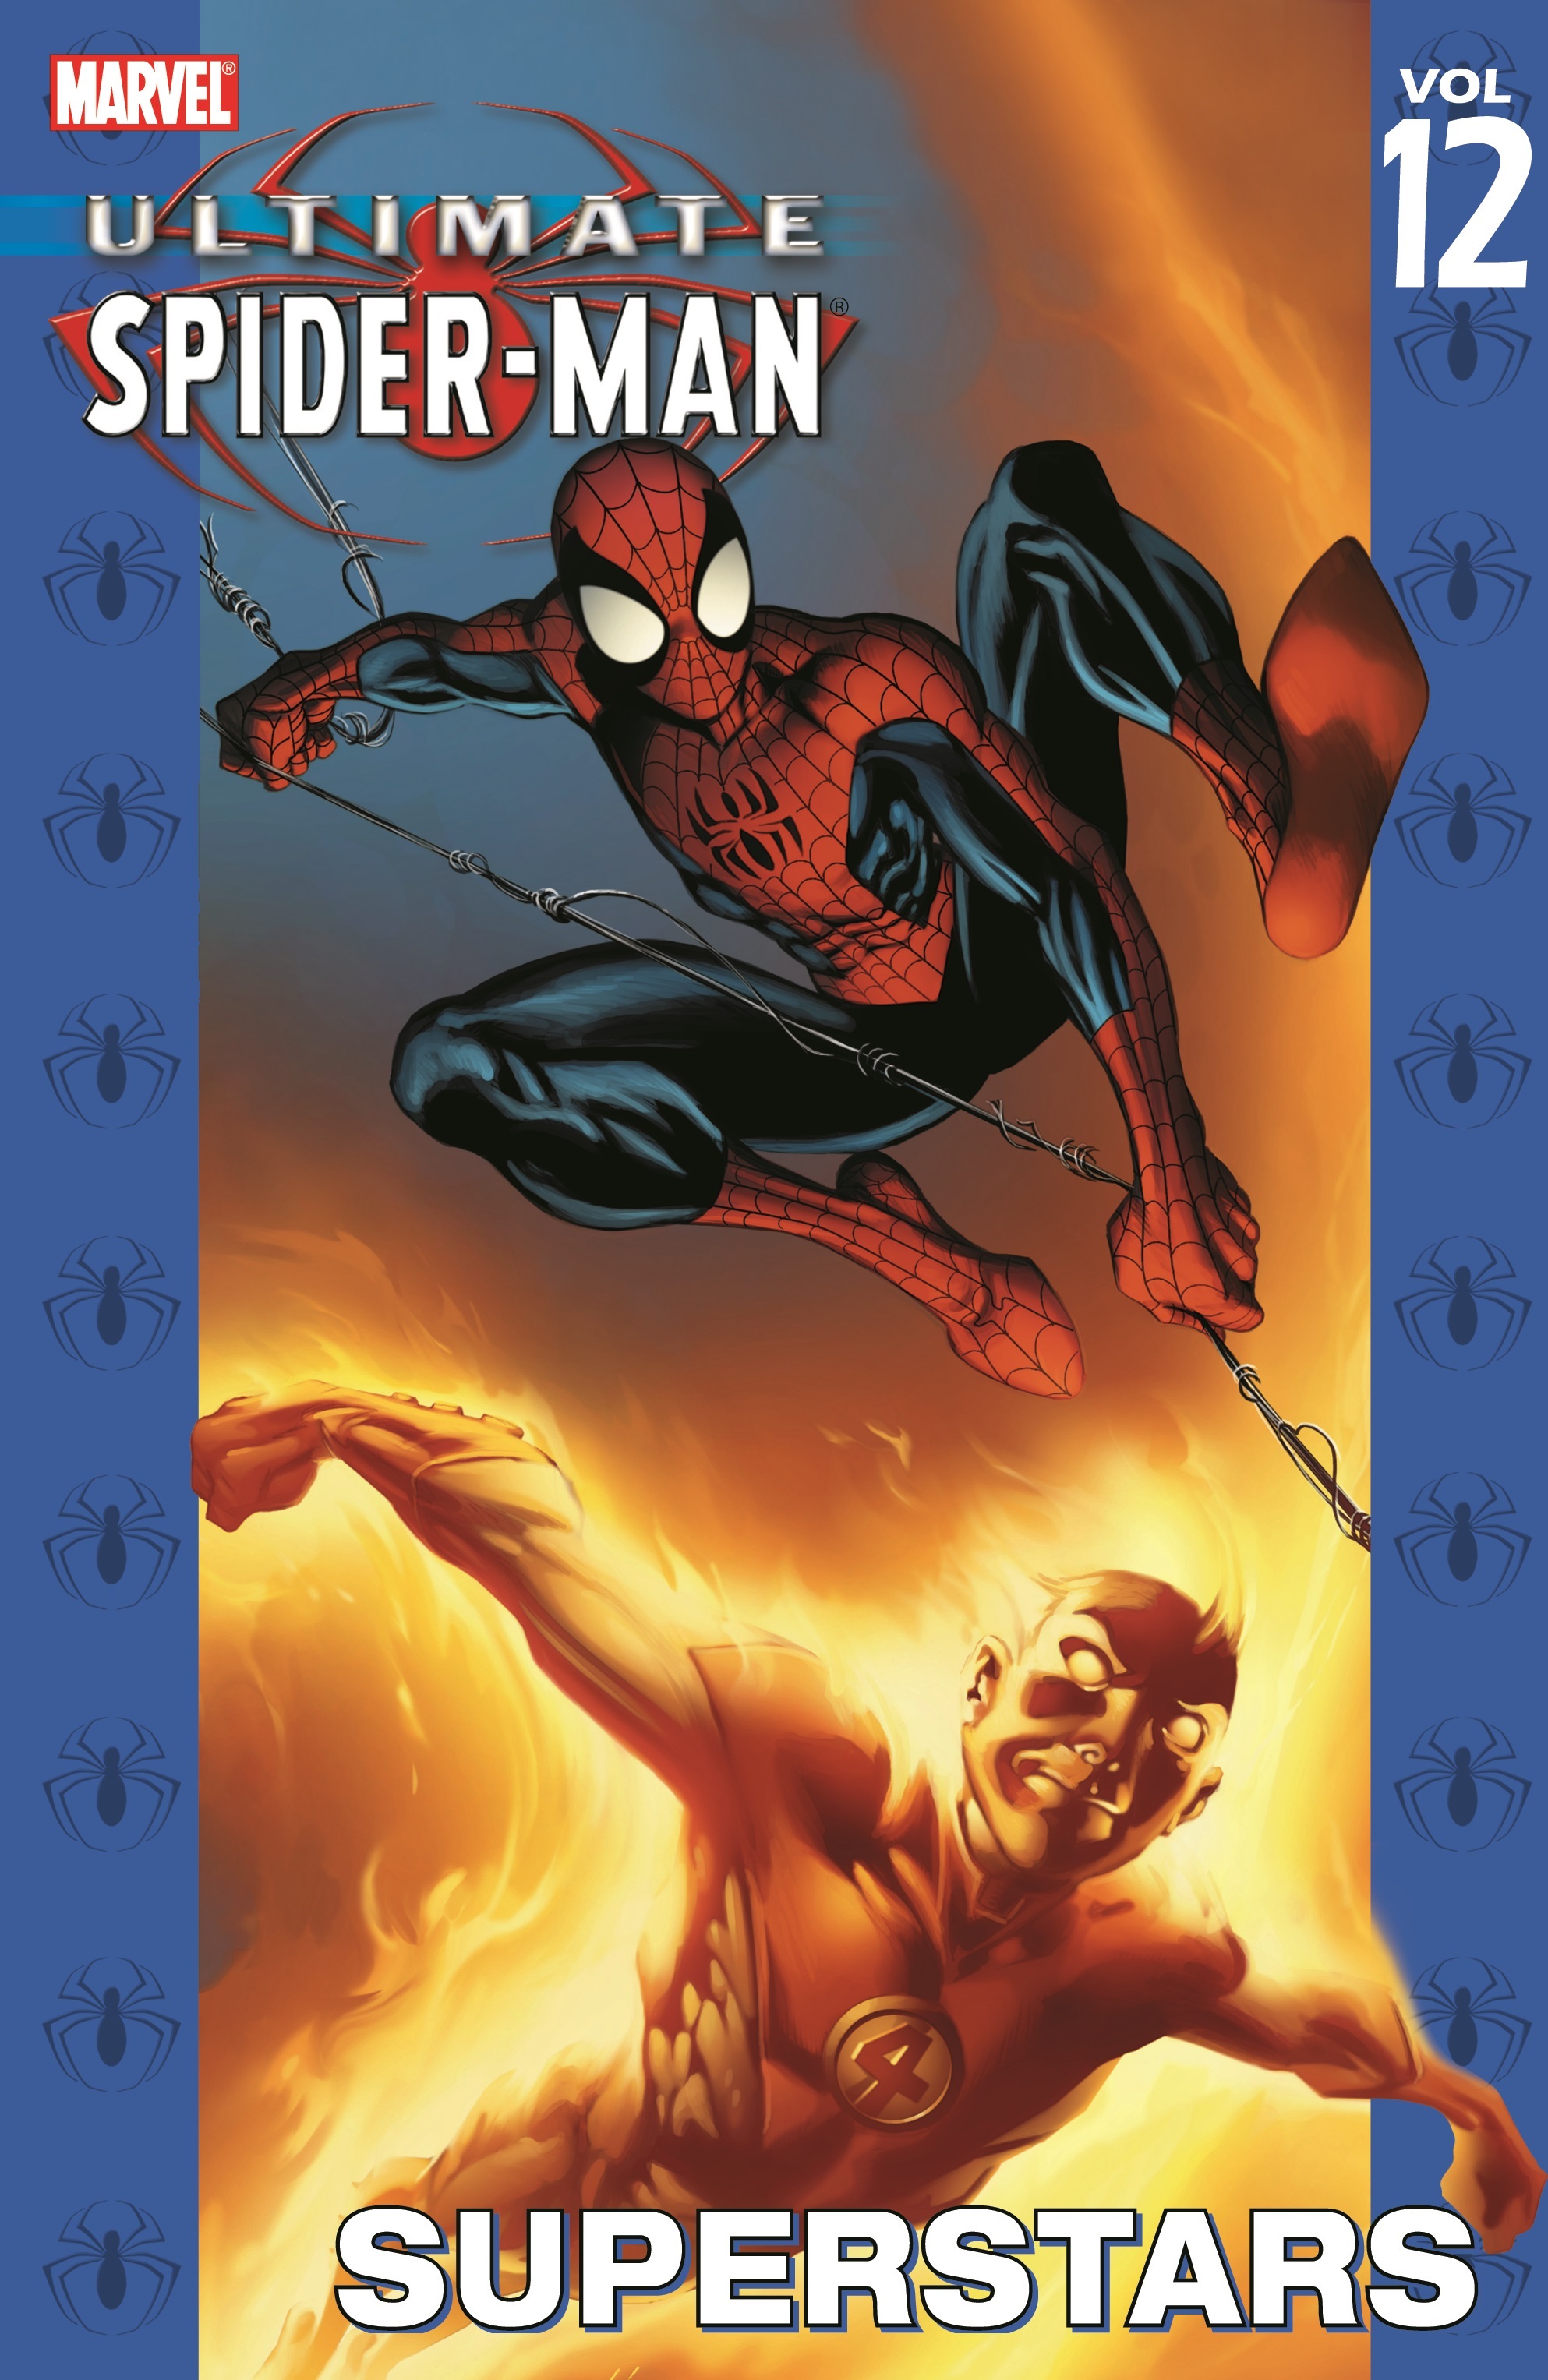 Ultimate Spider-Man Vol. 12: Superstars (Trade Paperback)